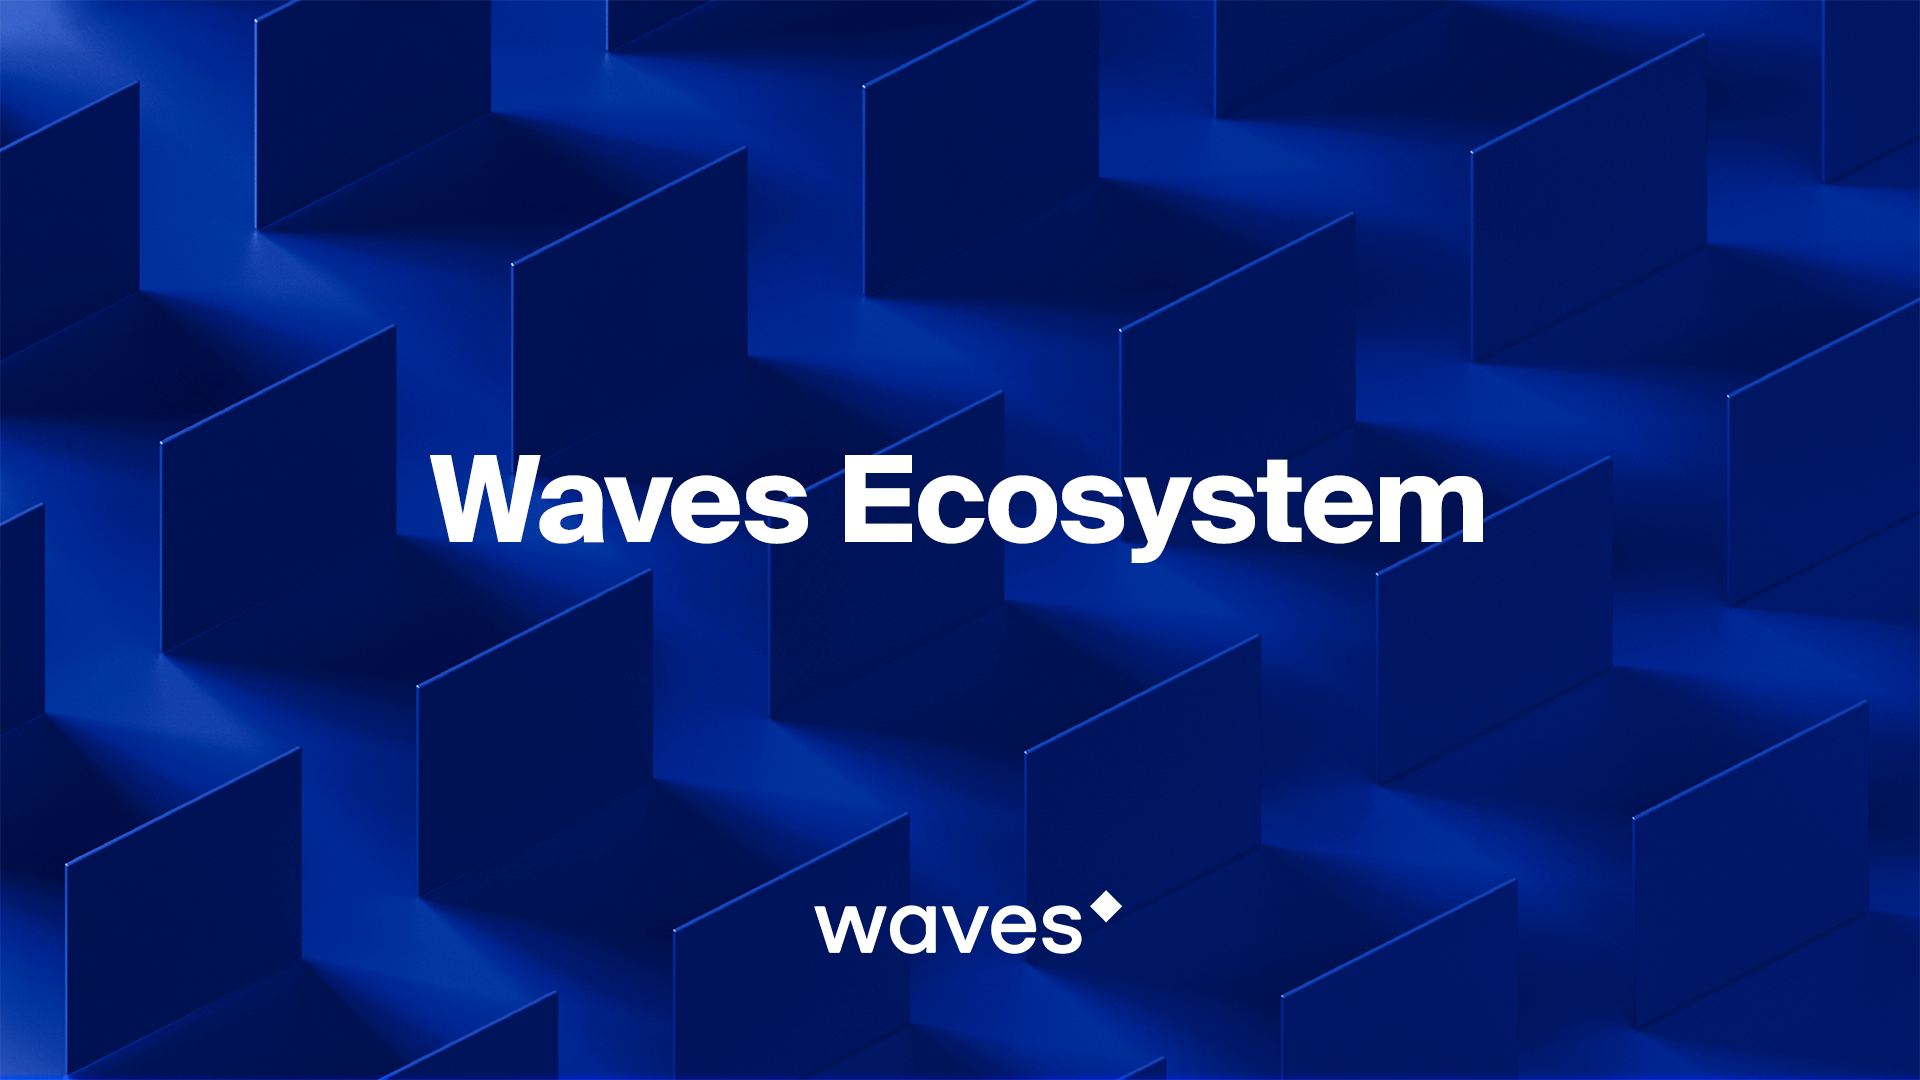 Waves Ecosystem Explained